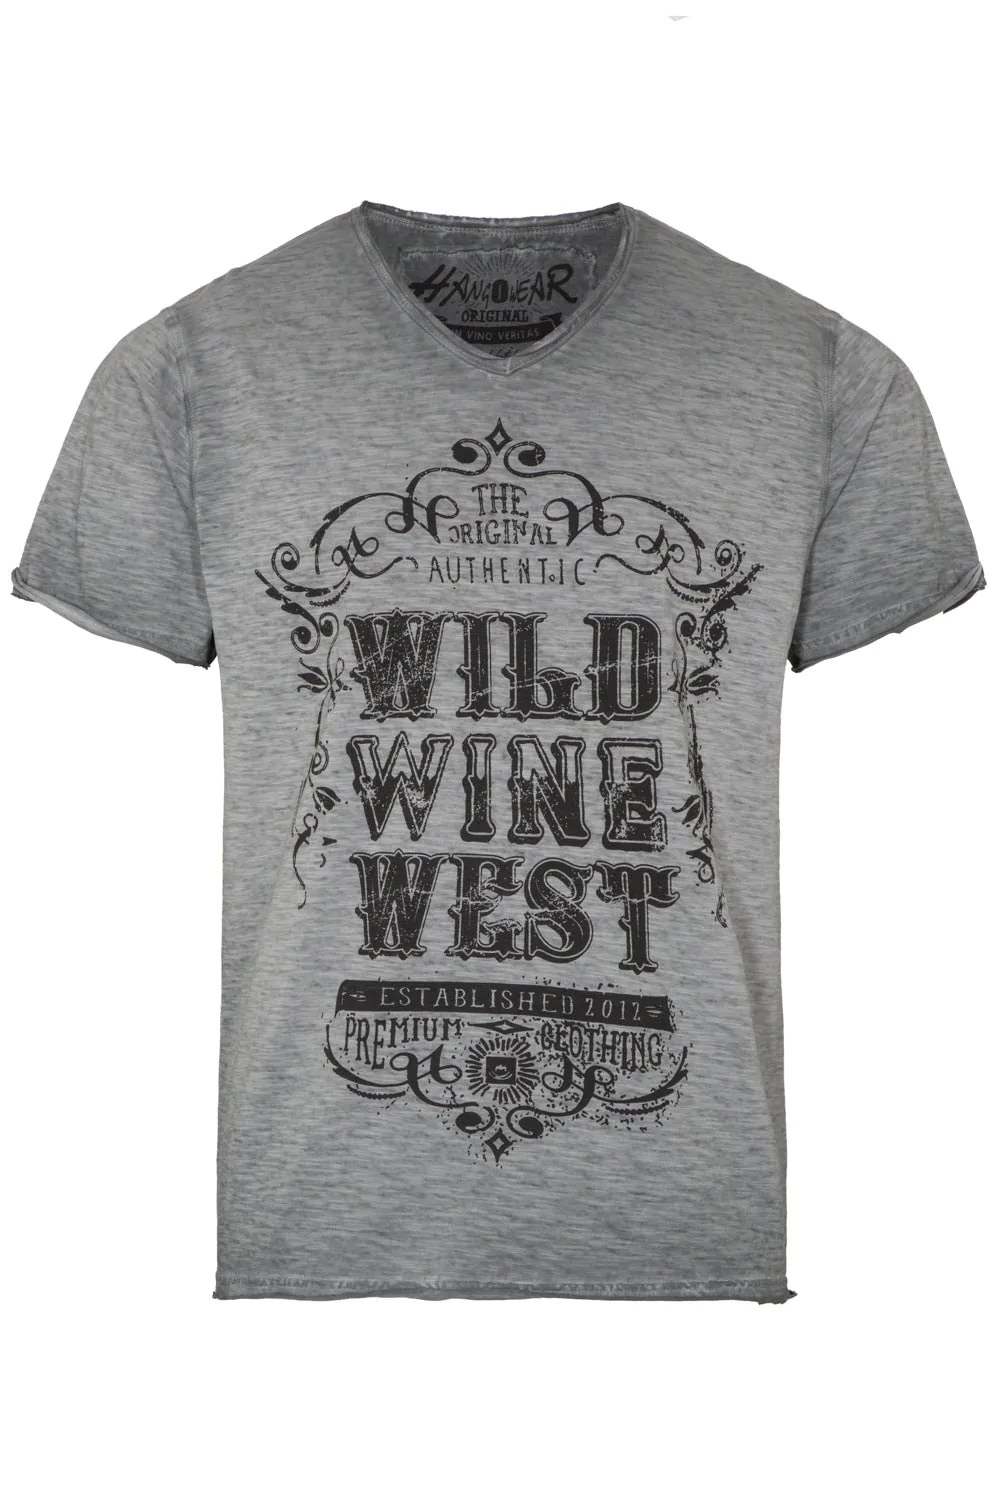 T-Shirt Wild Wine West